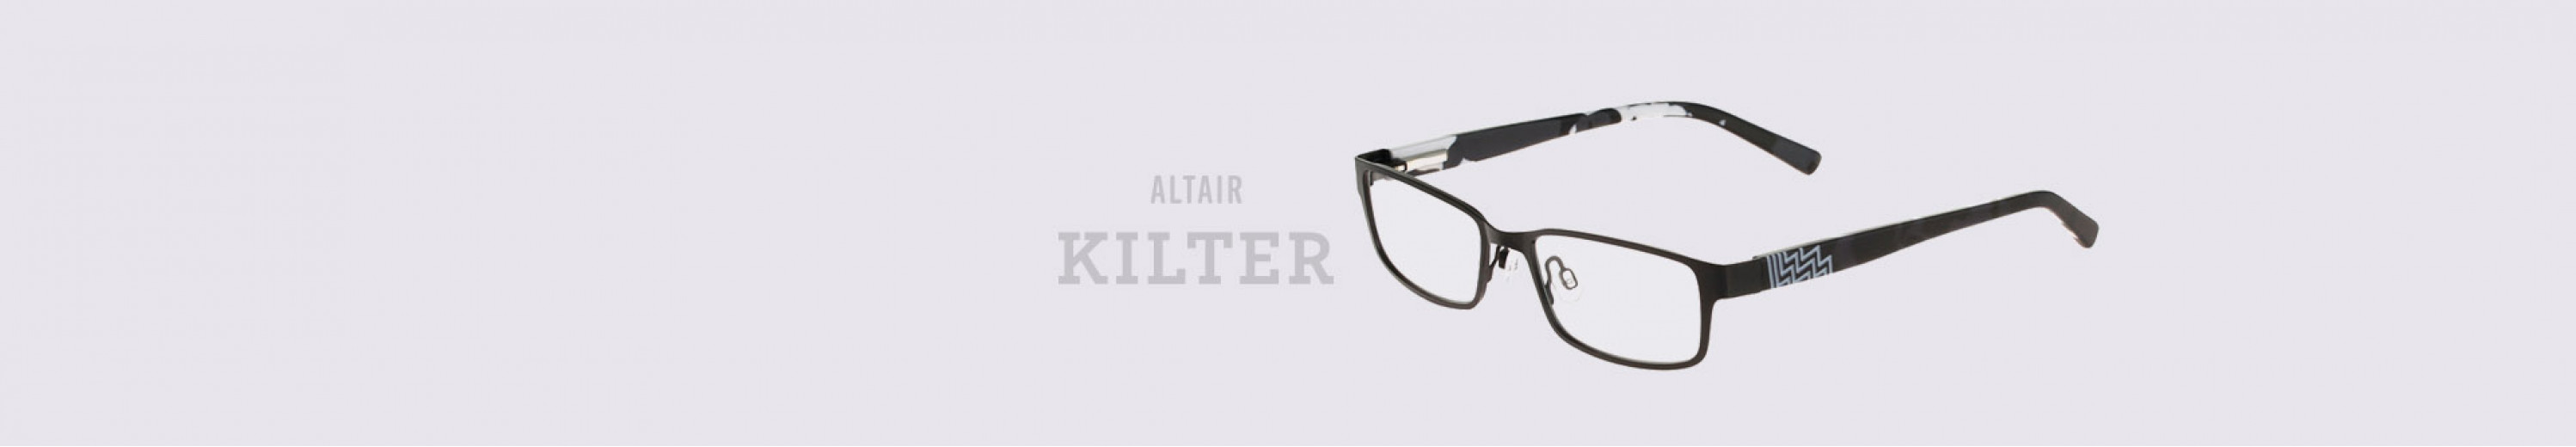 Kilter Eyeglasses for Men